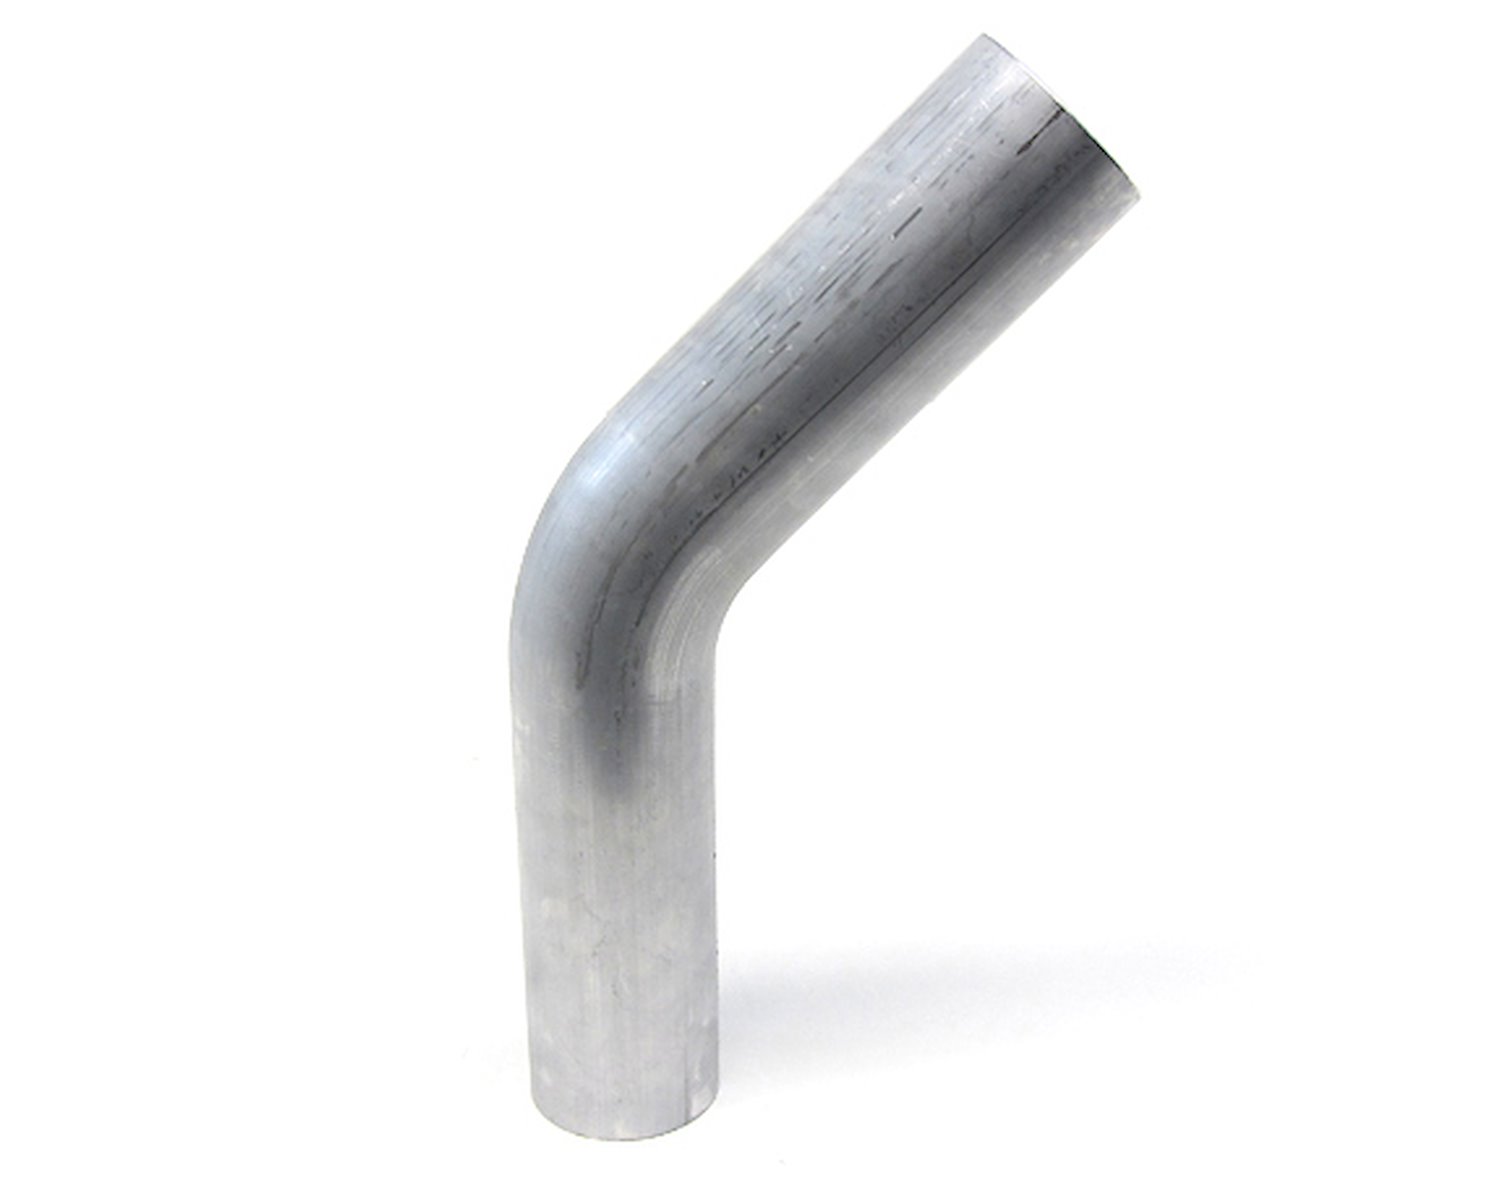 AT45-075-CLR-2 Aluminum Elbow Tube, 6061 Aluminum, 45-Degree Bend Elbow Tubing, 3/4 in. OD, Tight Radius, 2 in. CLR